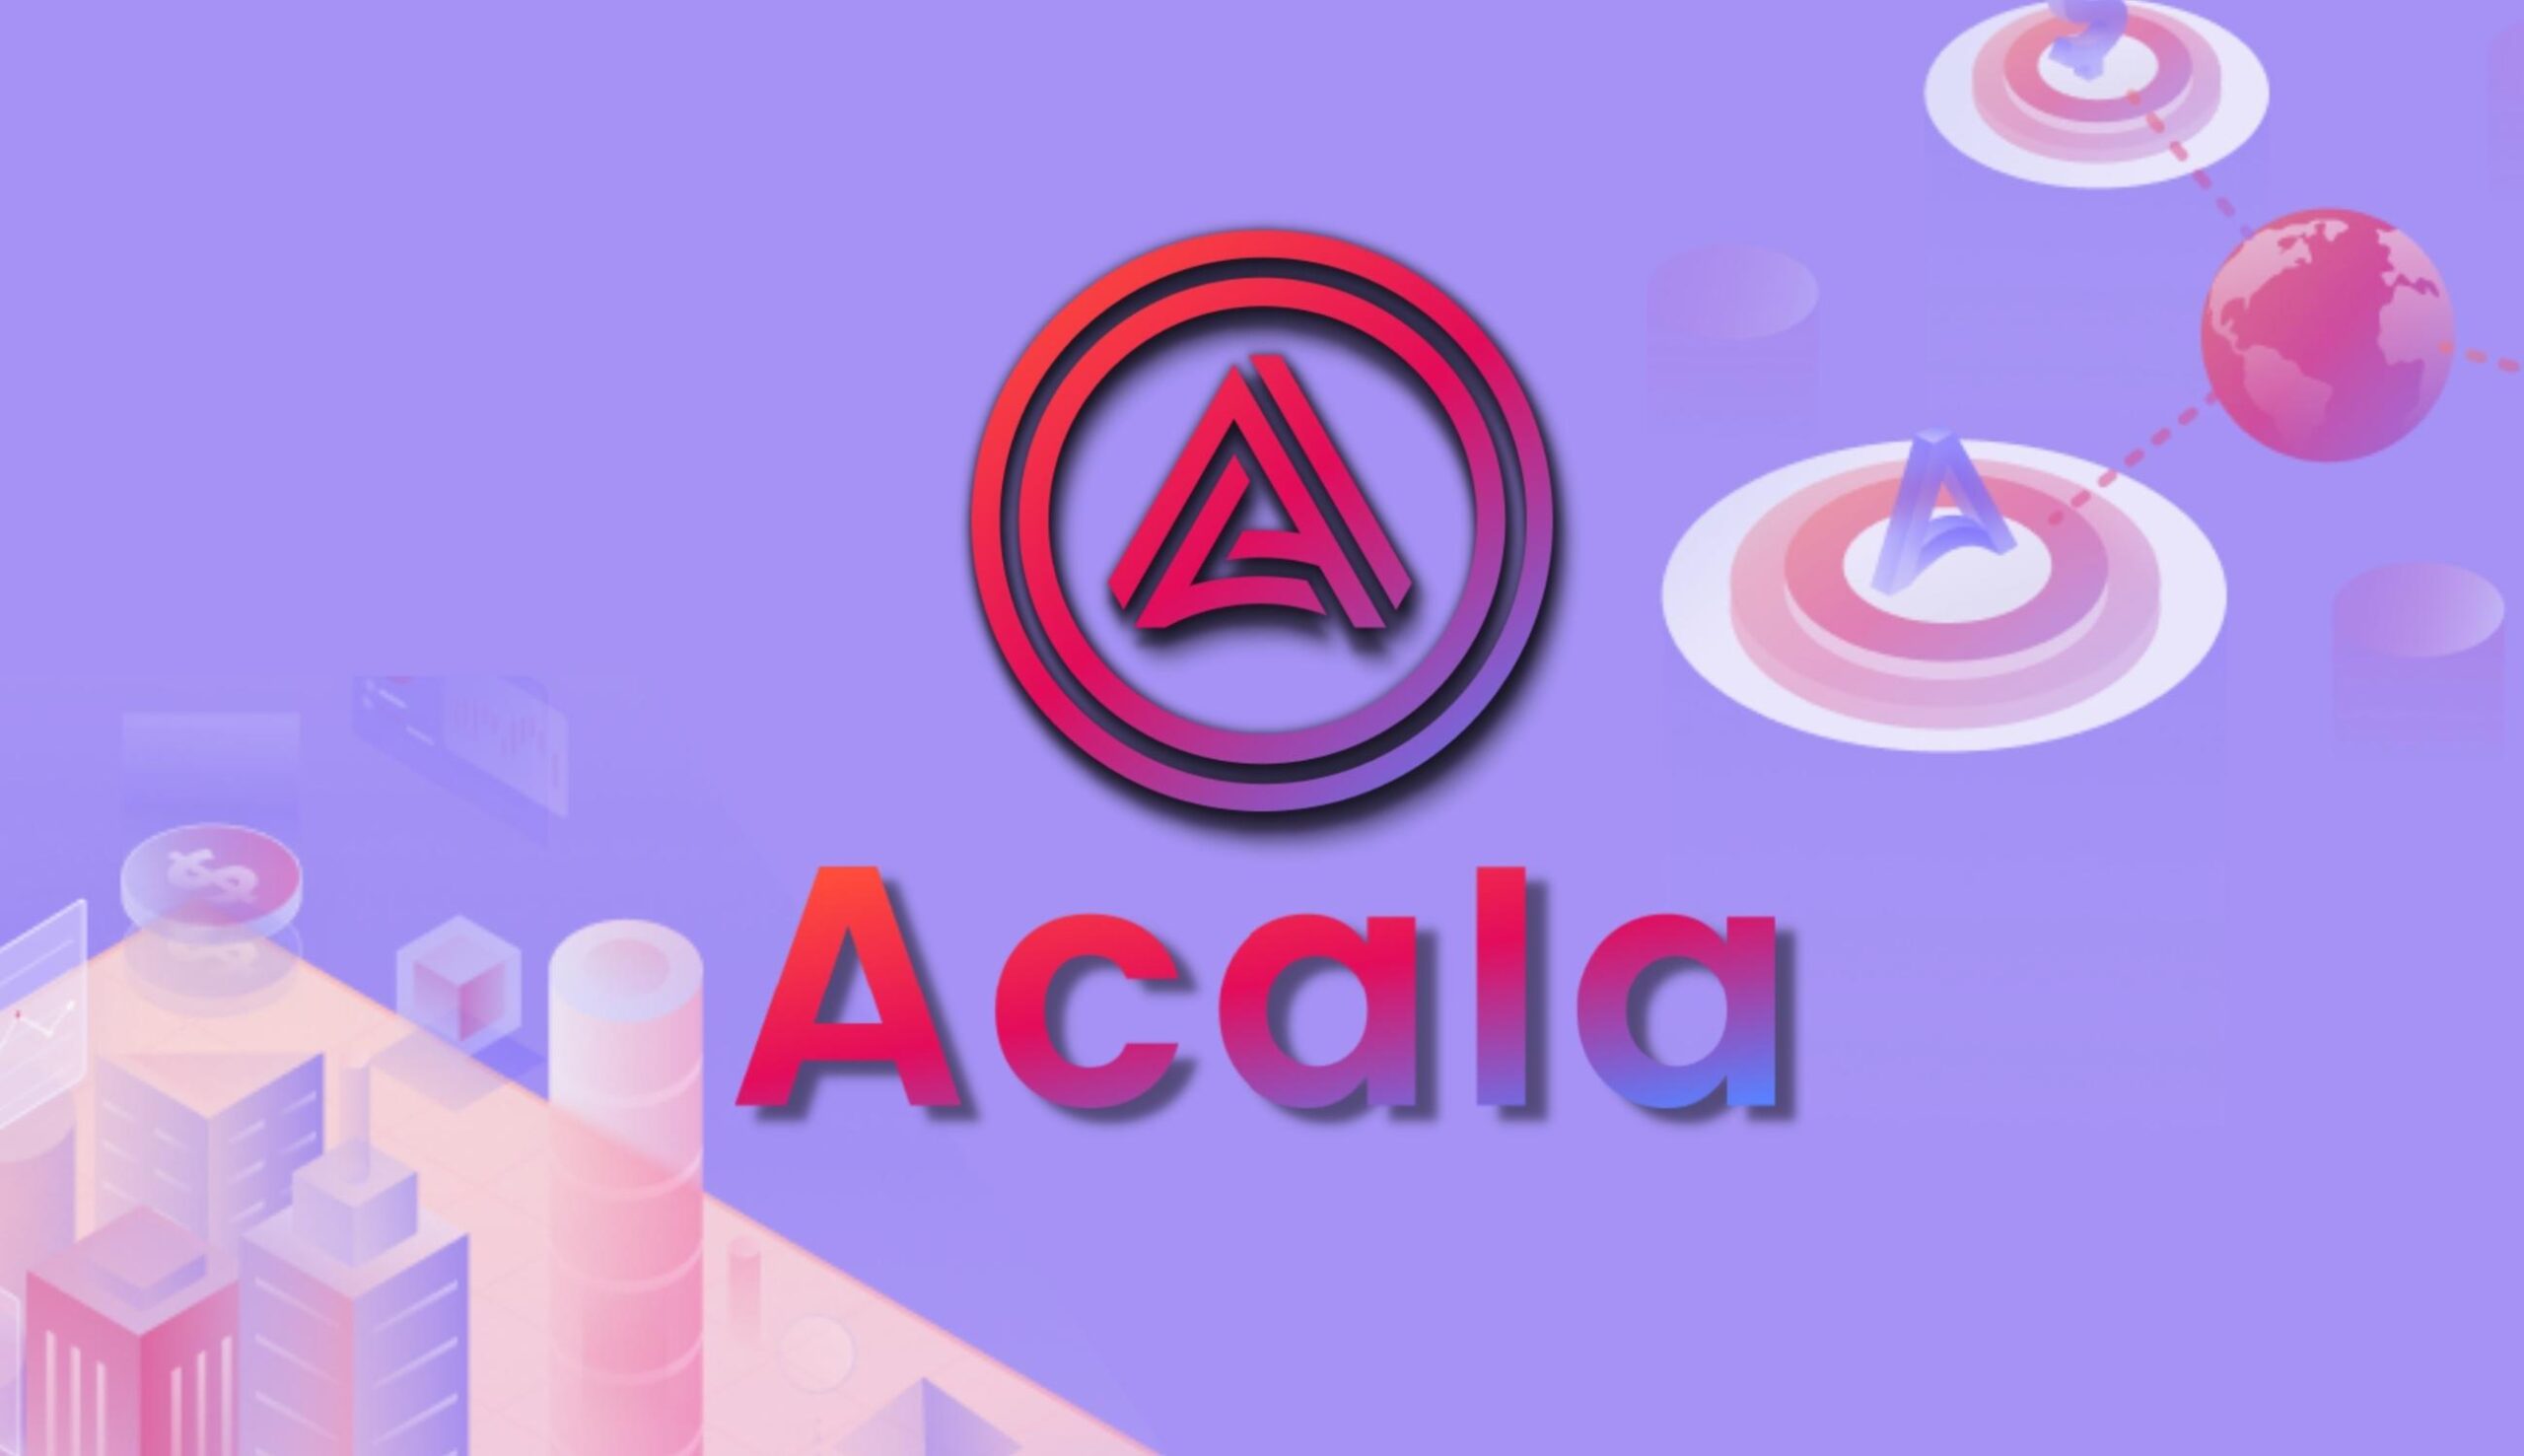 Что такое Acala Network.